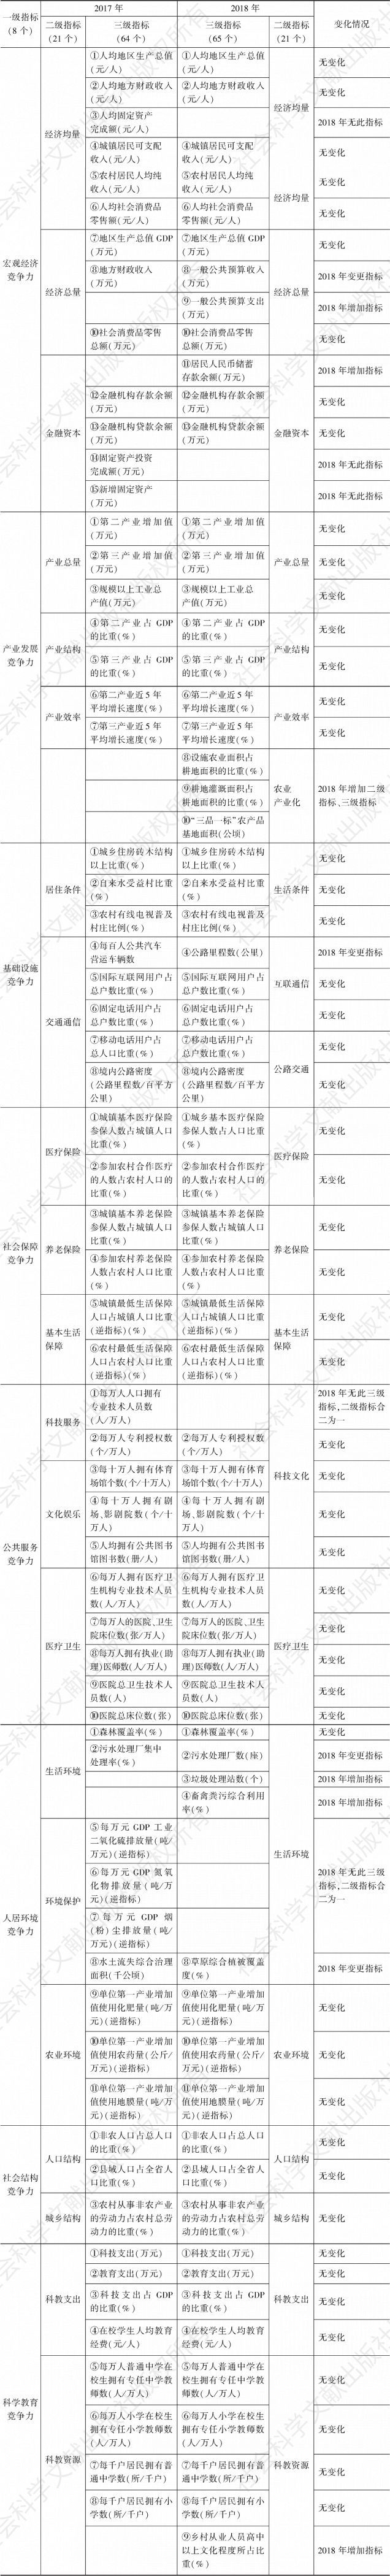 表1 2017年和2018年甘肃省县域竞争力评价指标体系